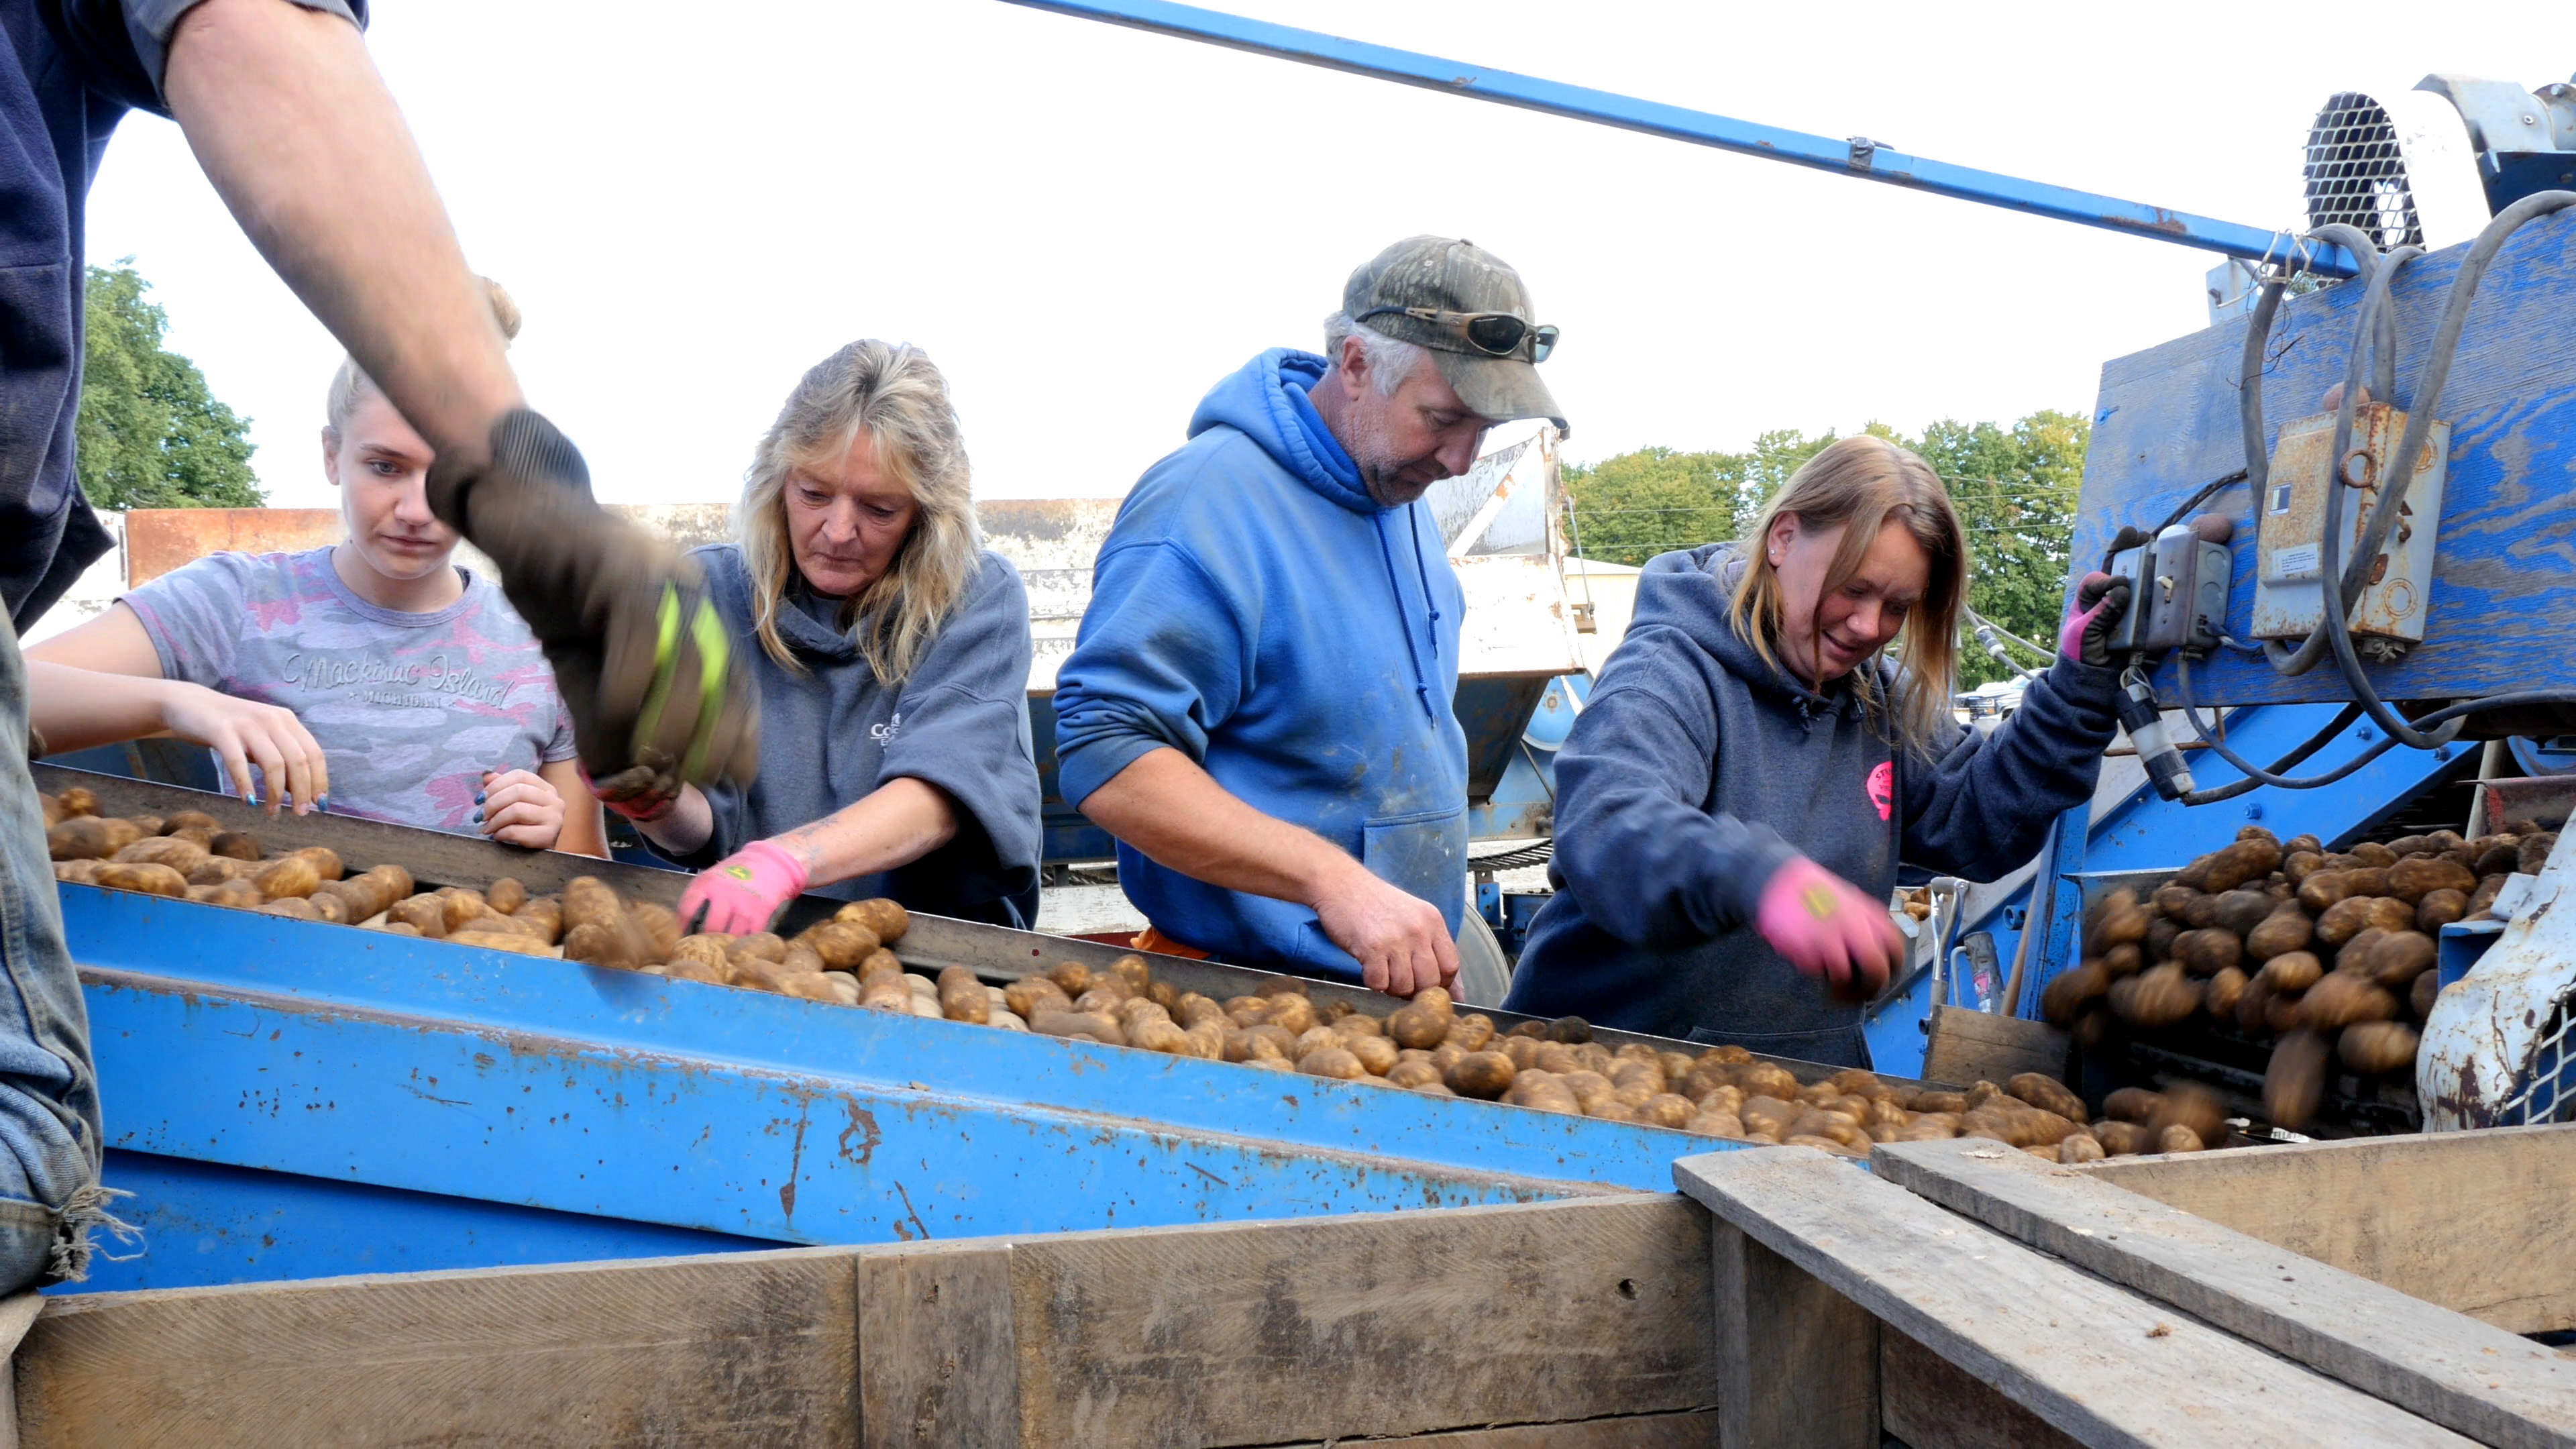 Workers sorting potatoes